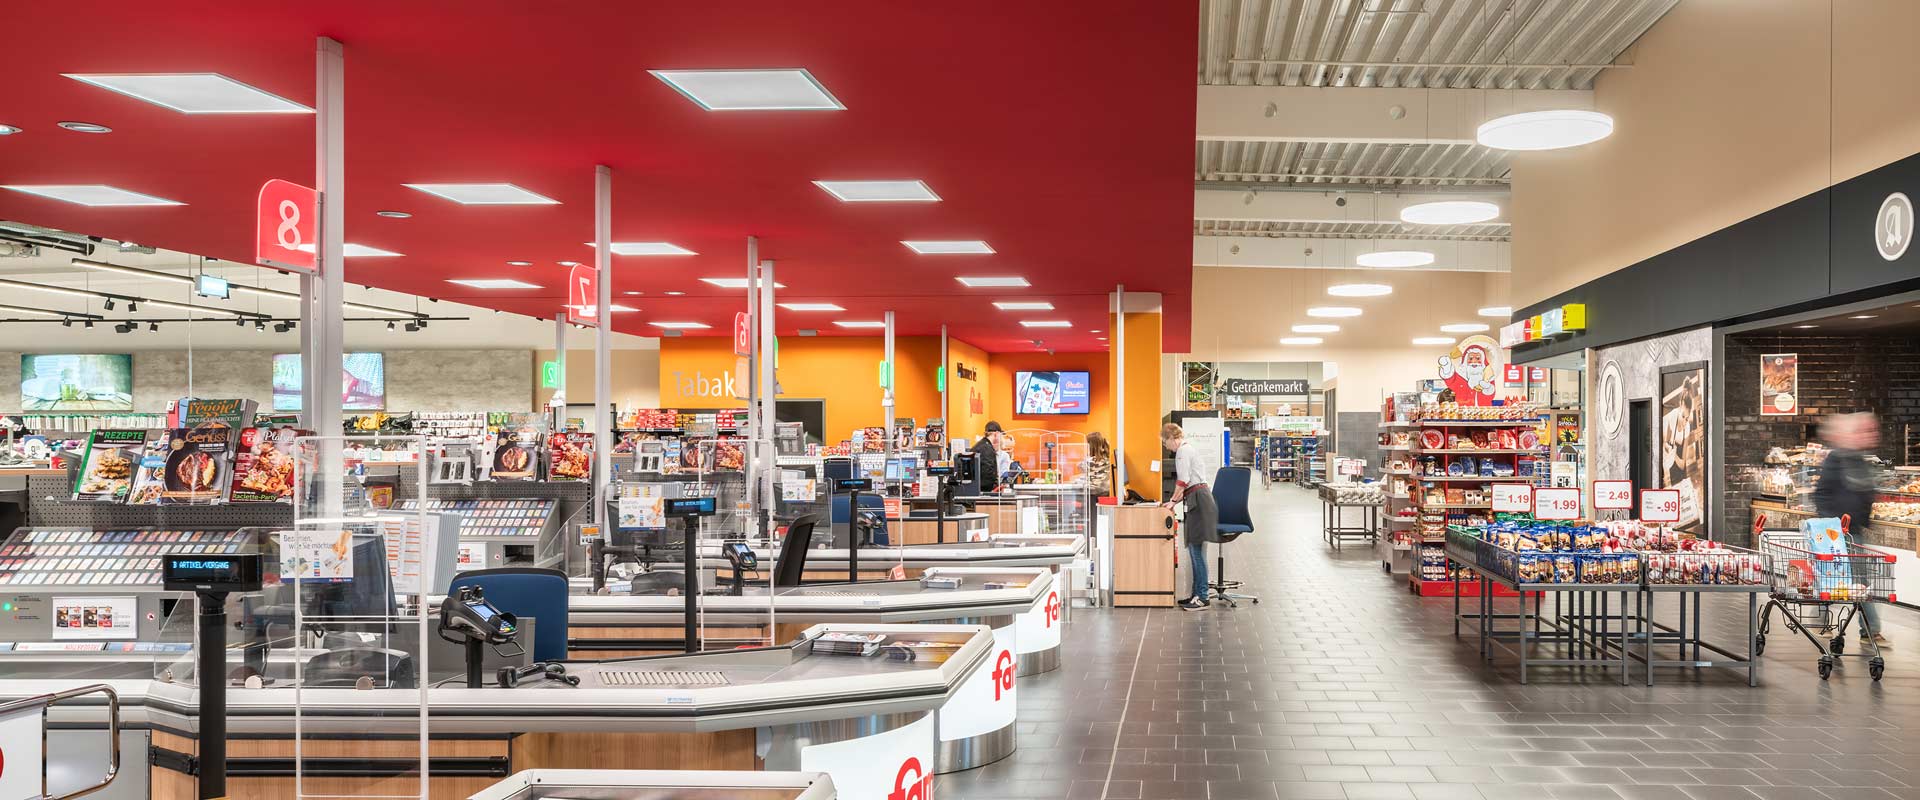 Area casse e corridoio di negozi esterno al supermercato illuminati con Arimo Active e Solegra. 